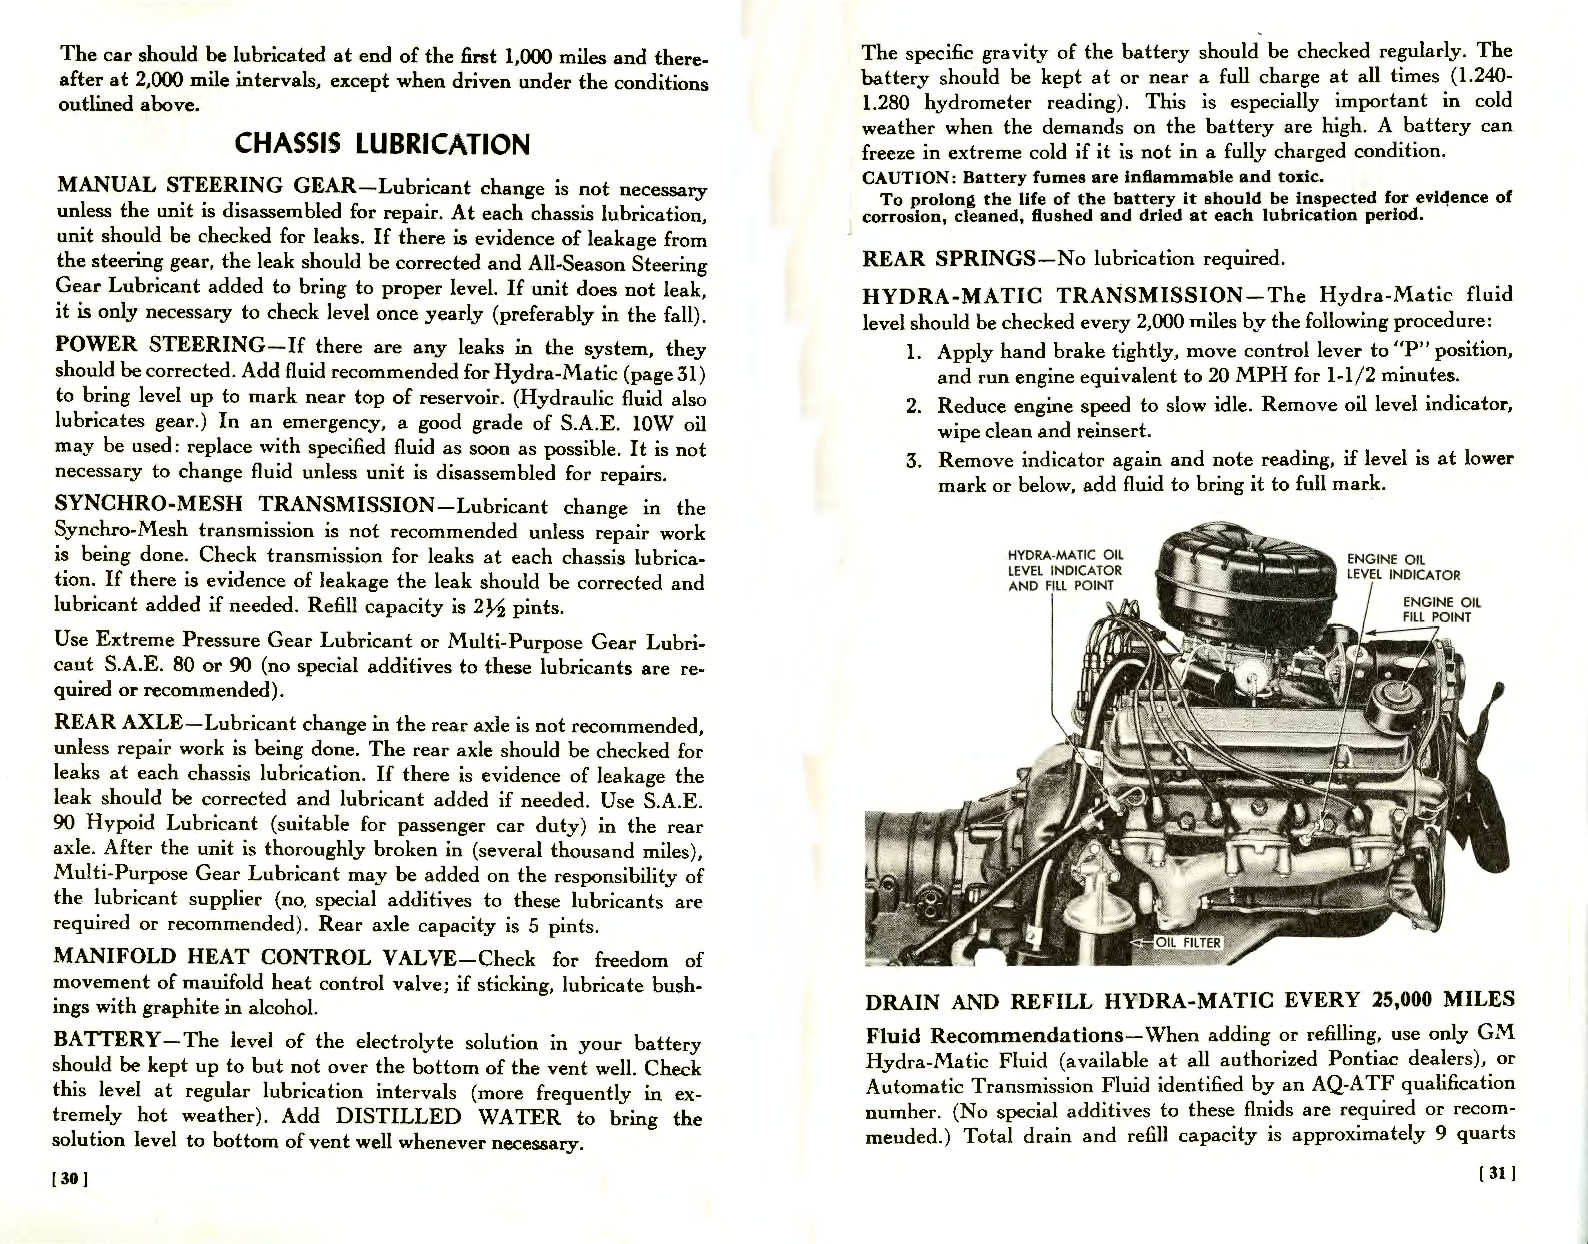 n_1957 Pontiac Owners Guide-30-31.jpg